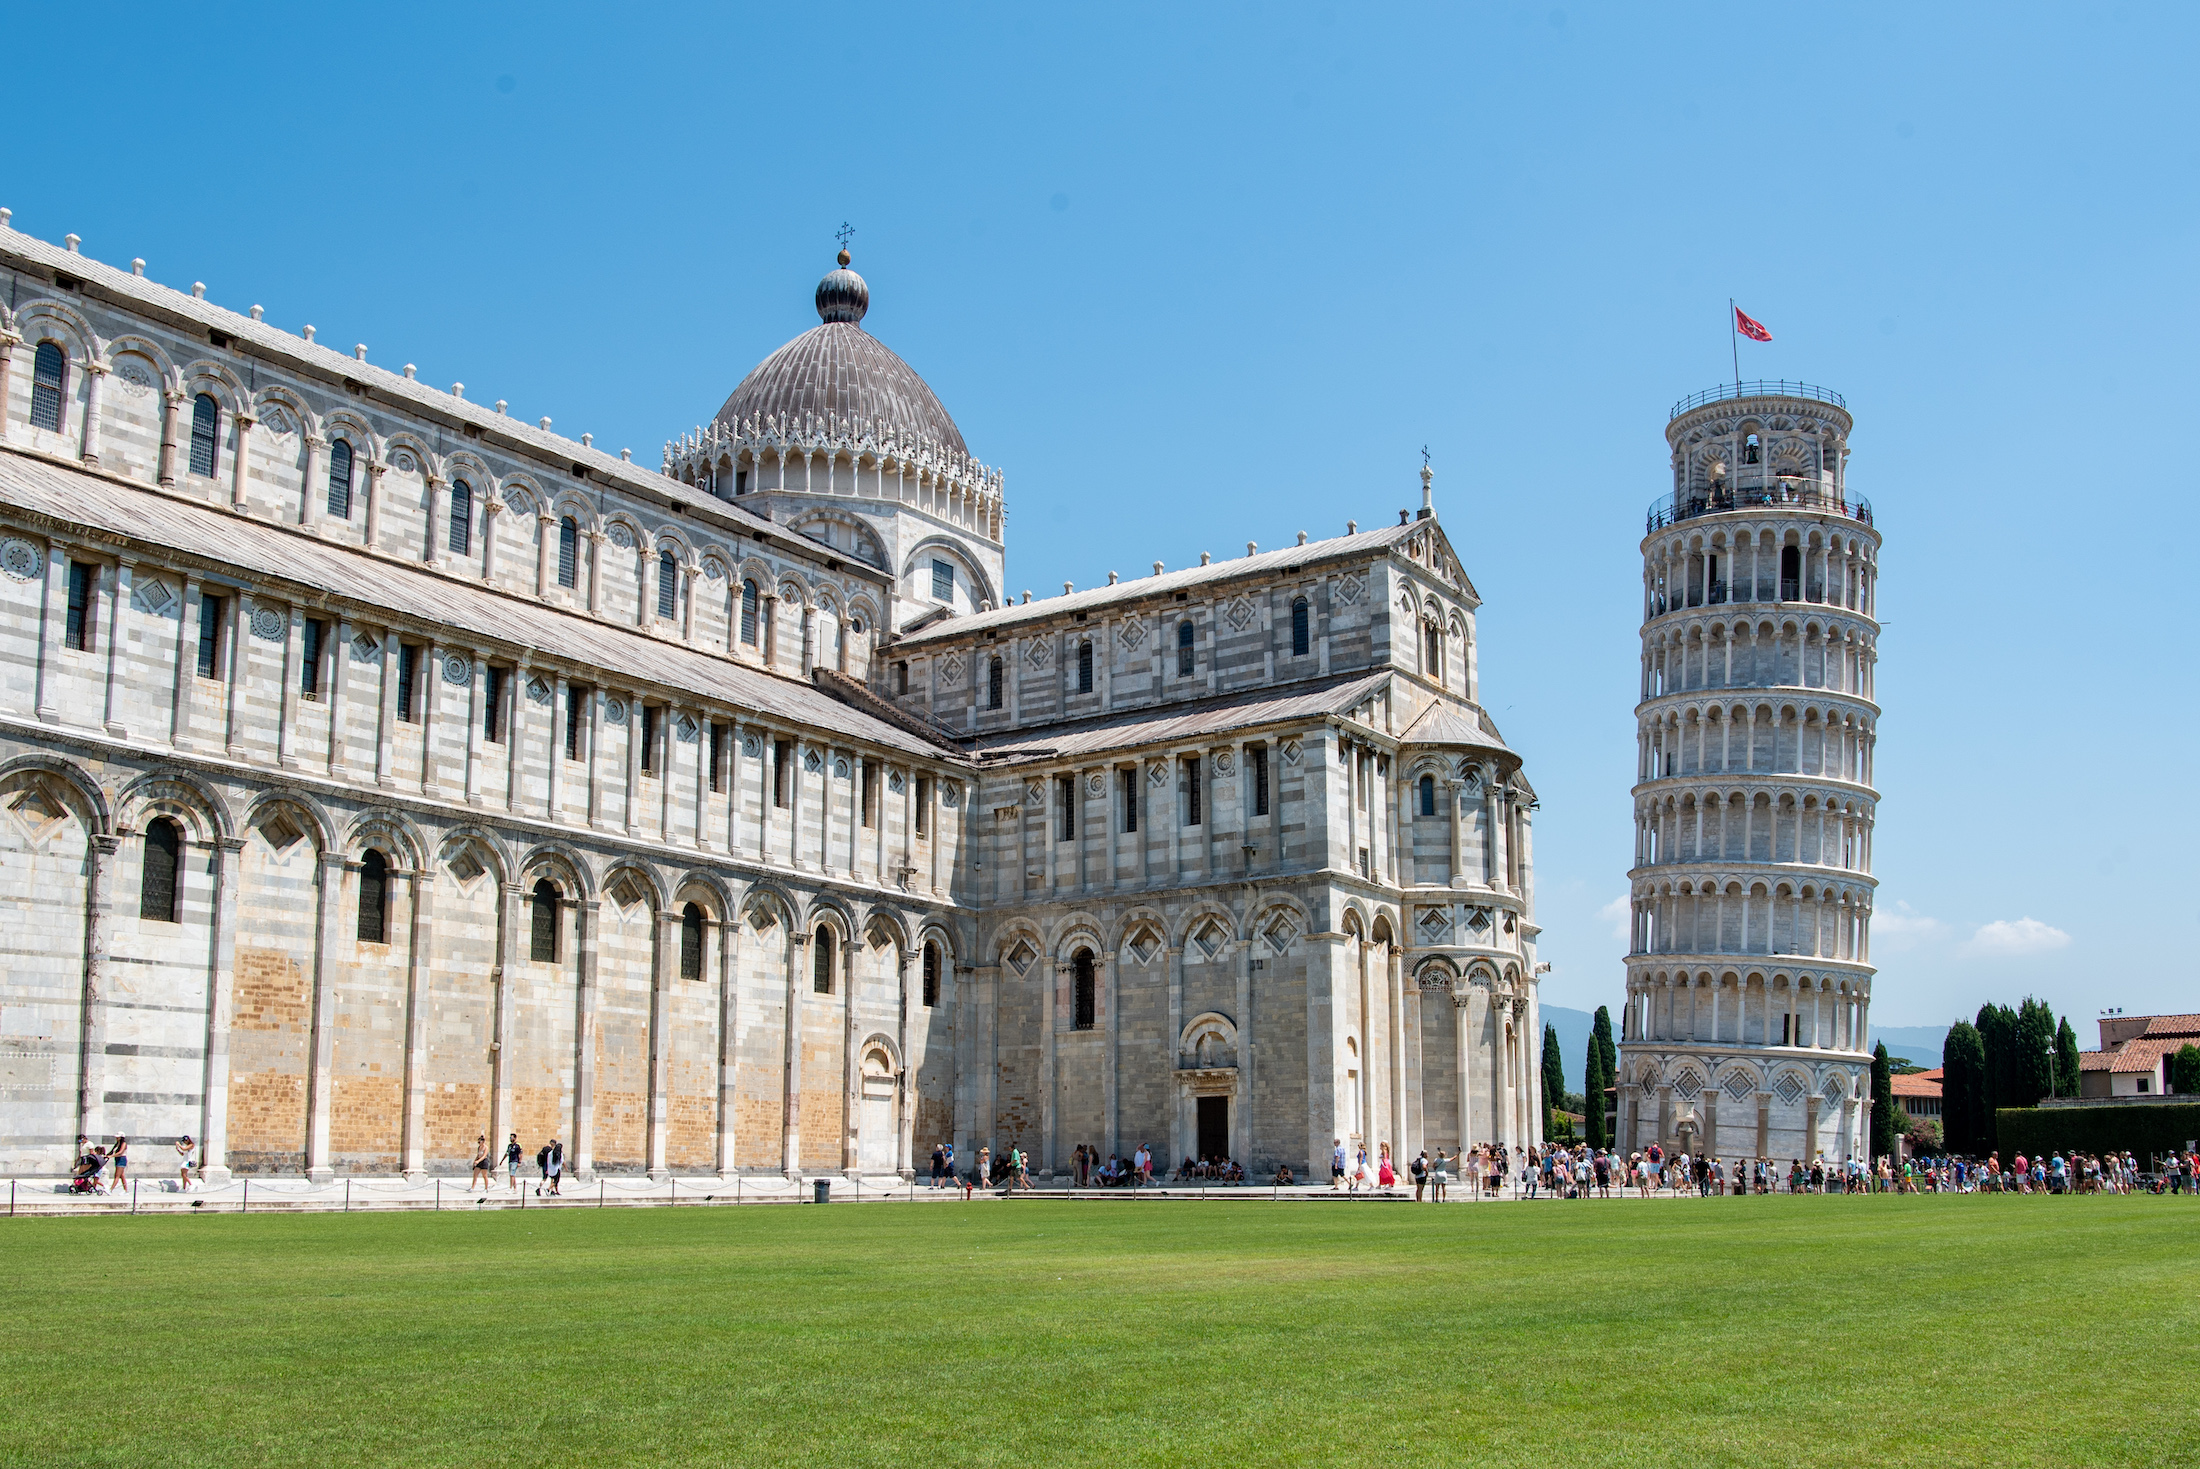 In Pisa móét je een keer geweest zijn, want deze scheve toren is echt uniek